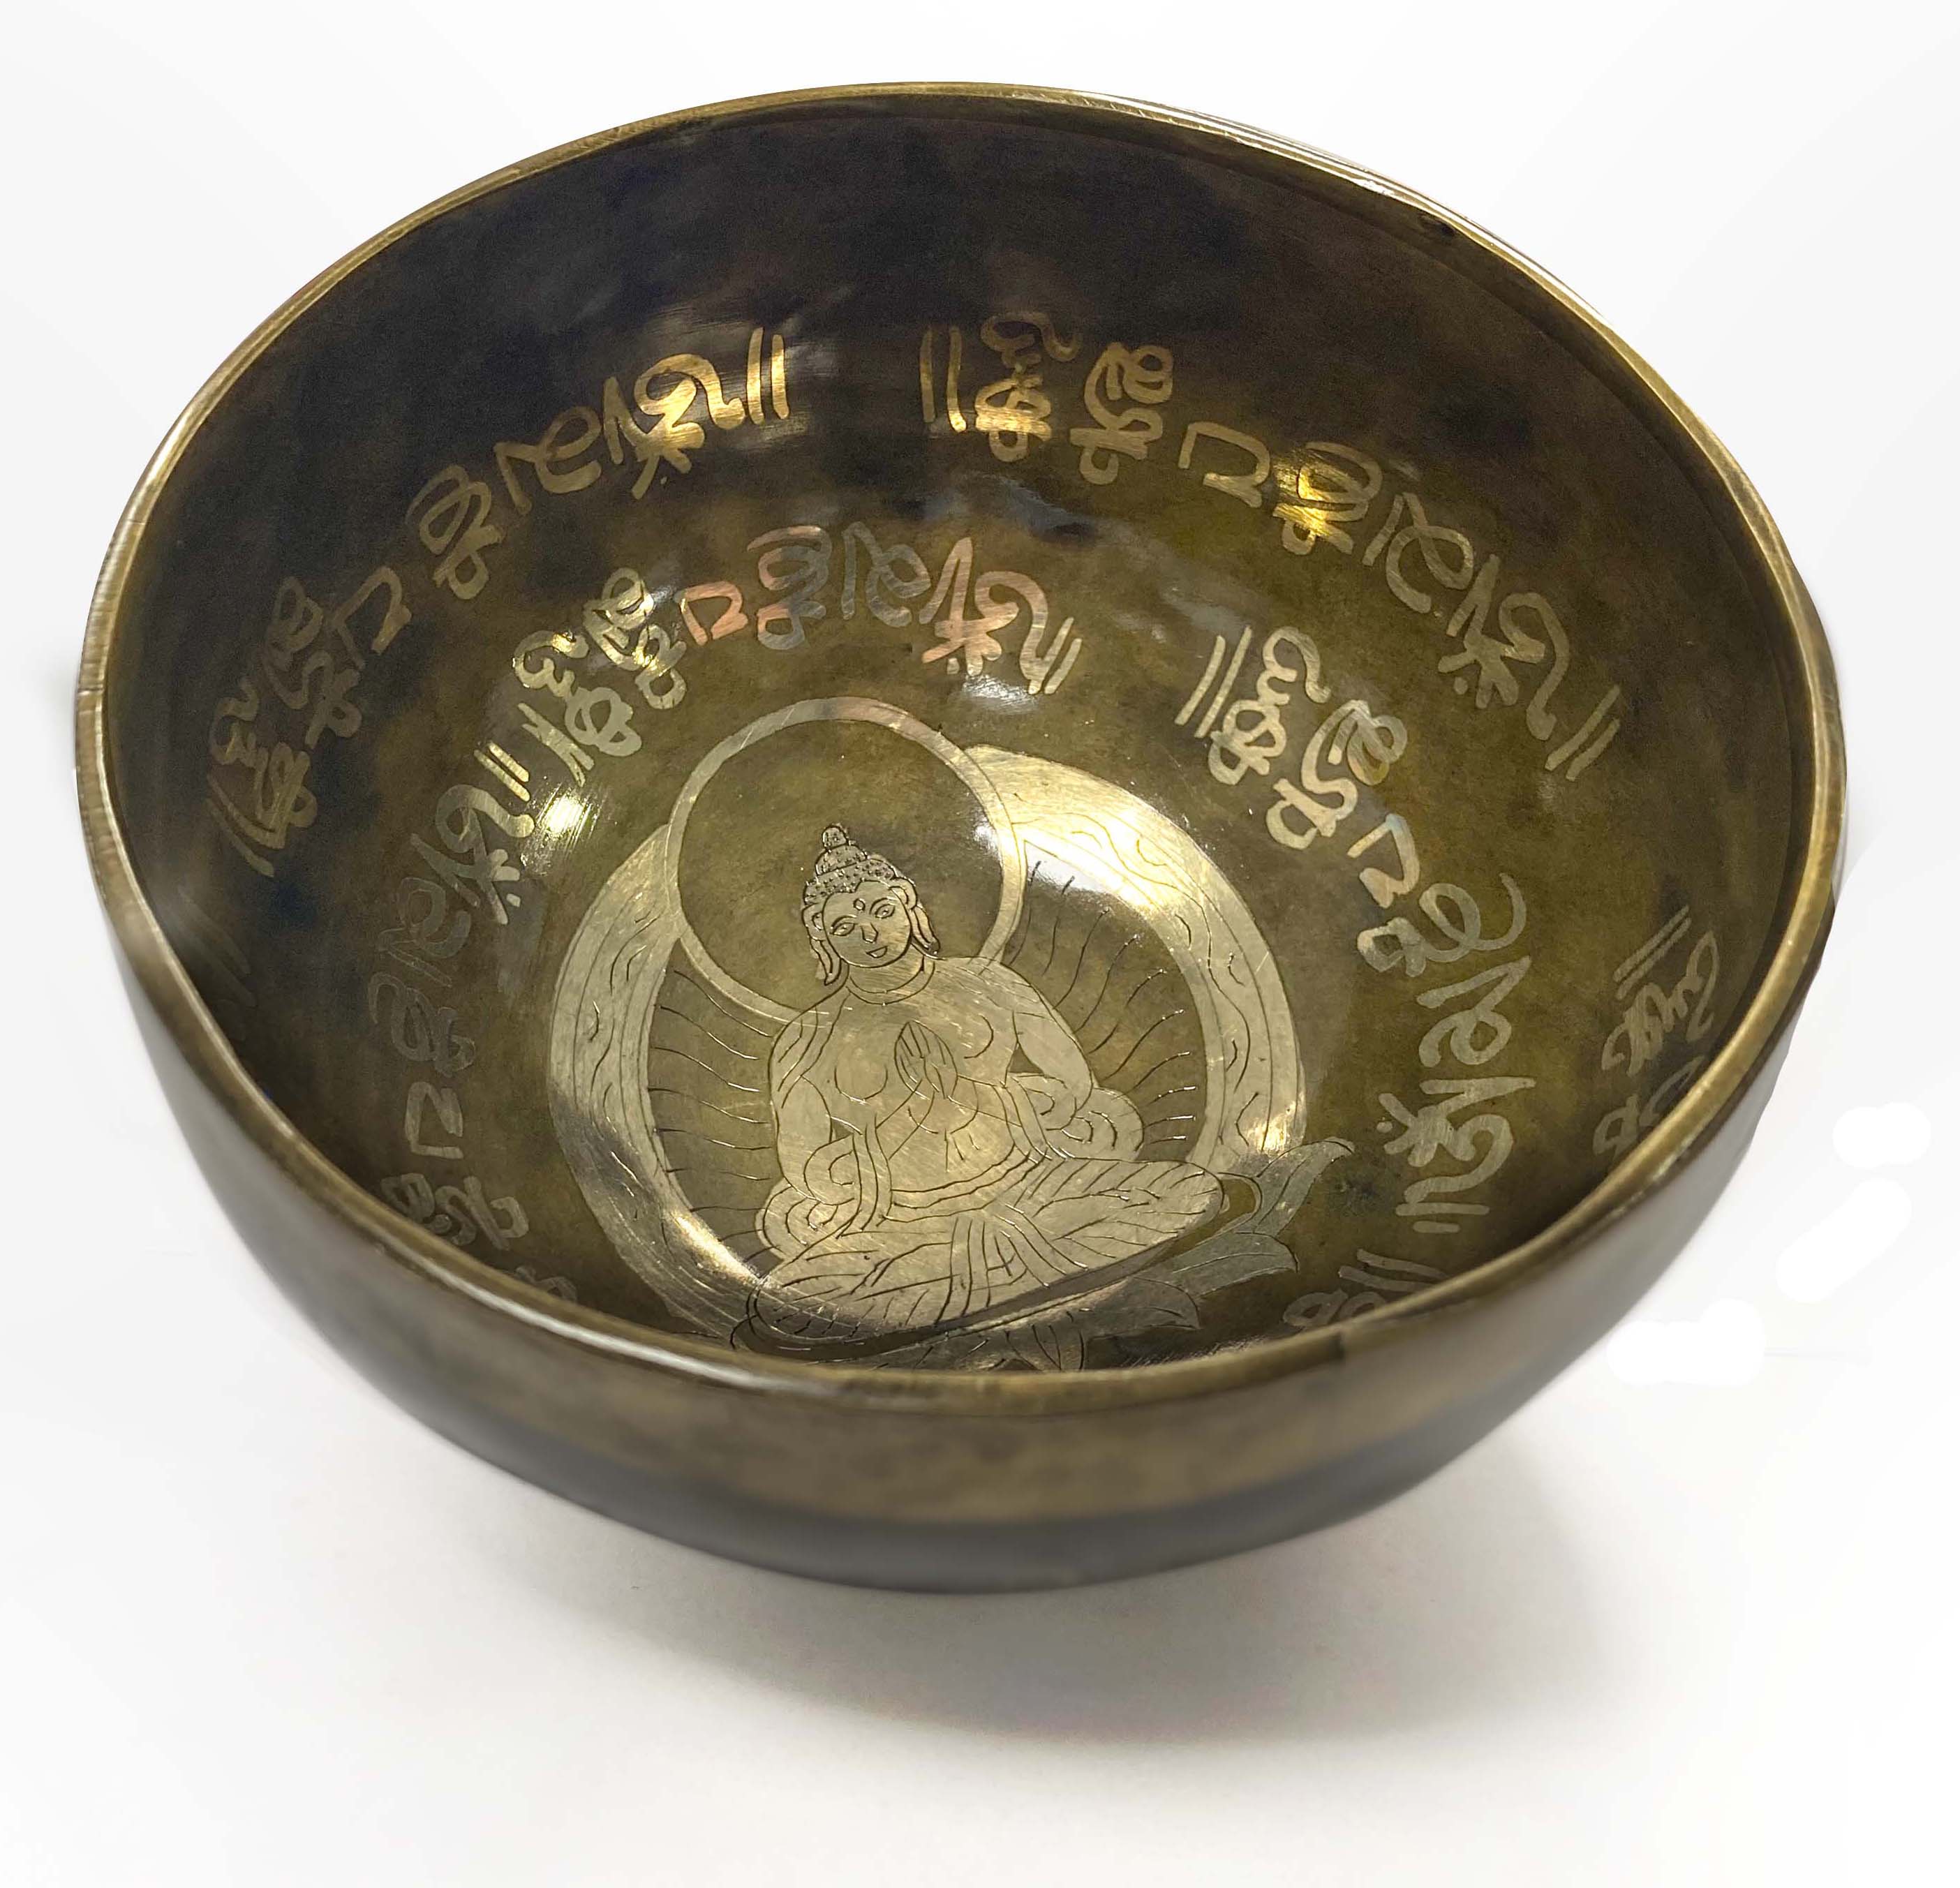 Tibetan singing bowl with engravings - Buddha - 16cm